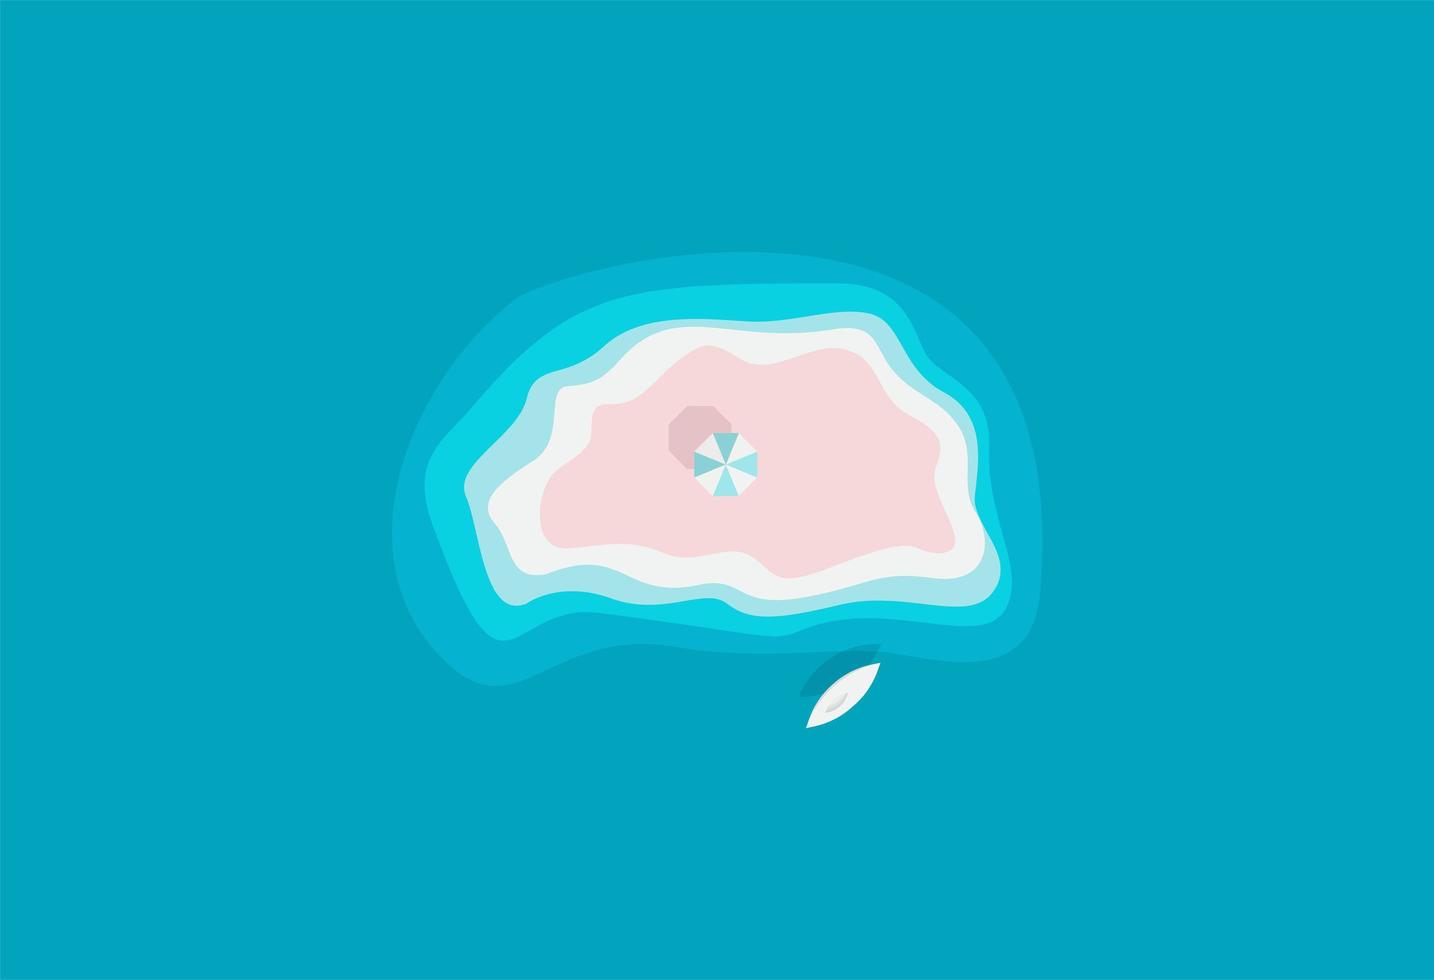 zand wild eiland in azuurblauwe oceaan met parasol, ontspanning alleen plaats, prachtig strand, paradijselijk eiland, vectorillustratie. vector